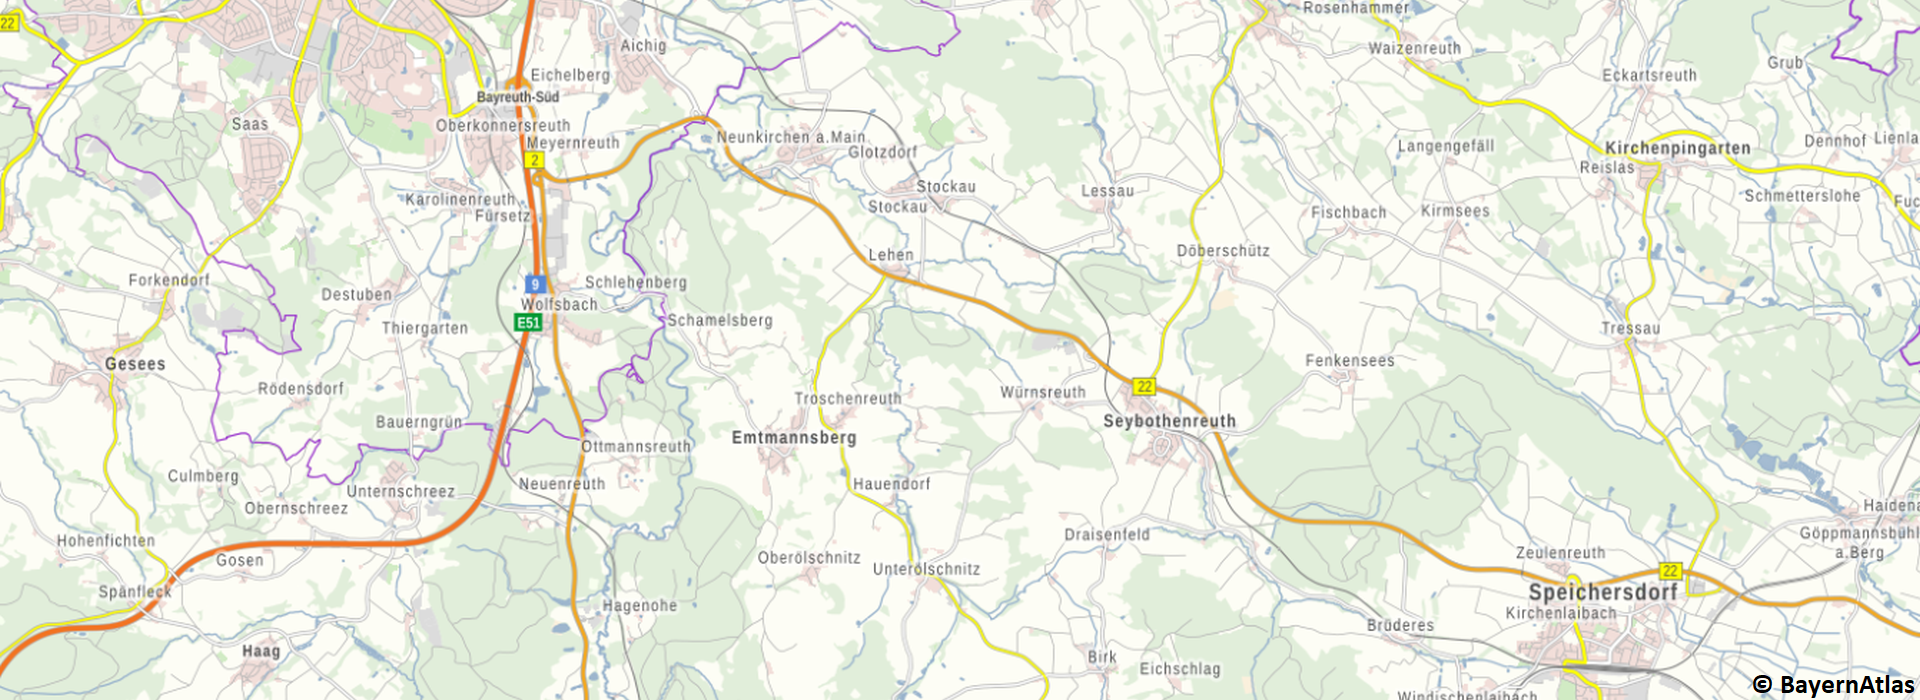 Gemeindekarte Emtmannsberg aus dem Bayern Atlas